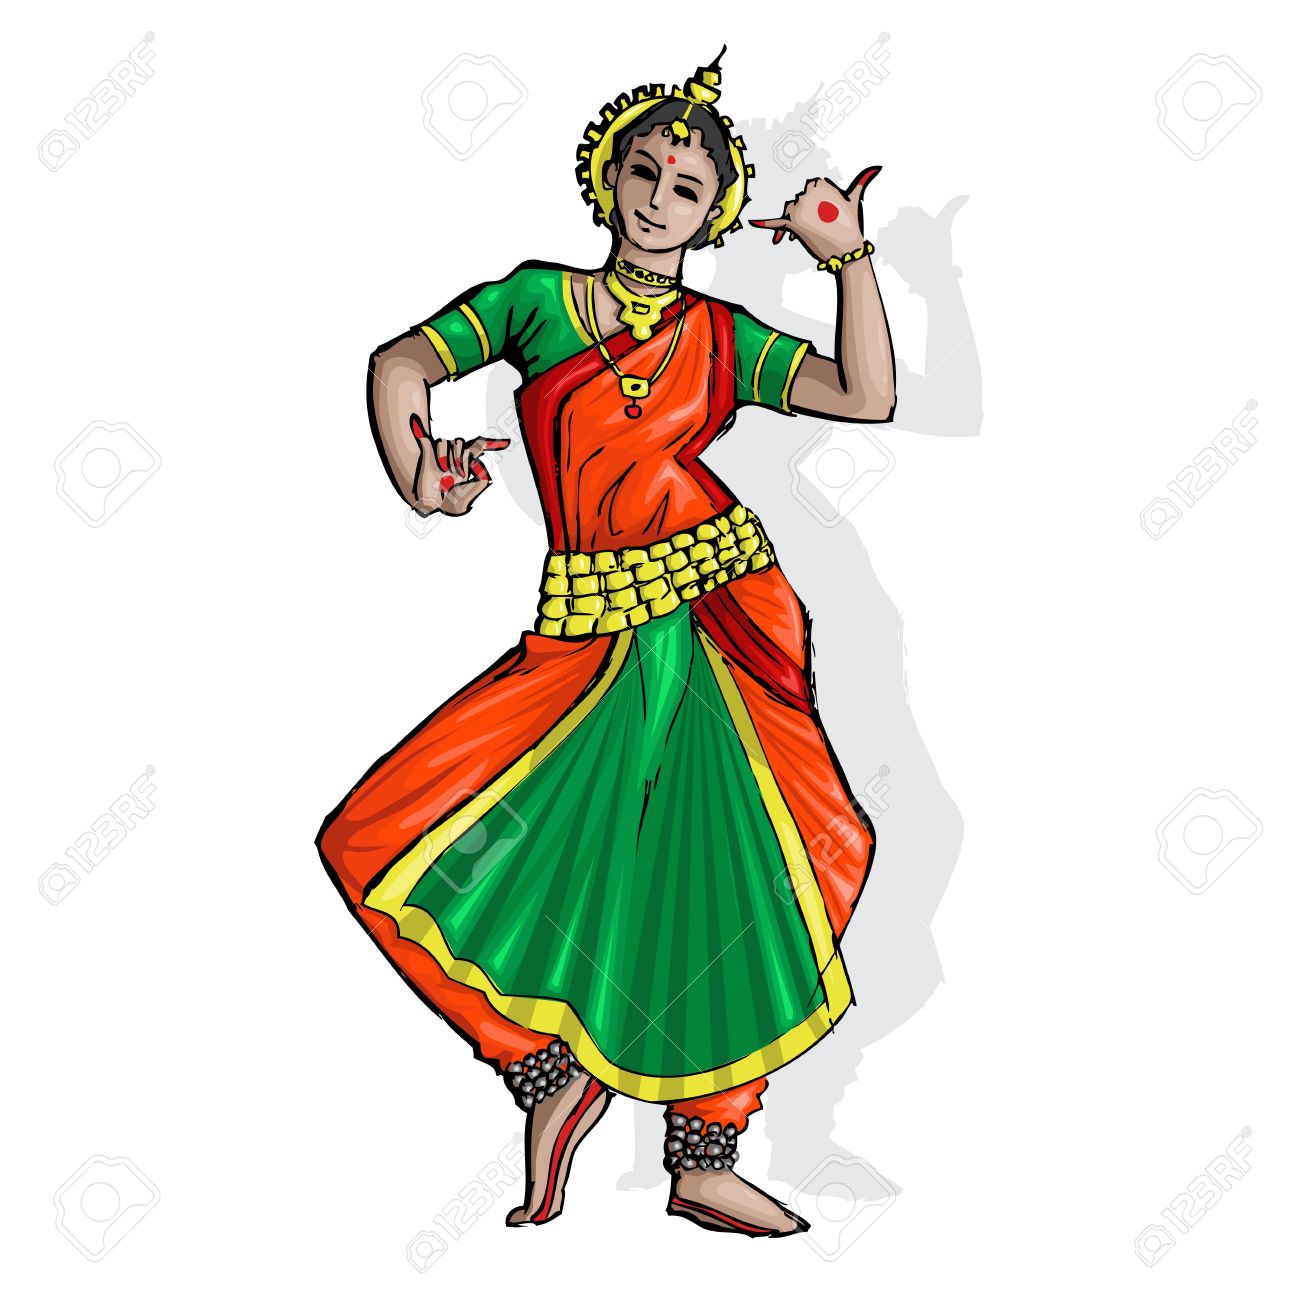 dancing clipart bharatanatyam